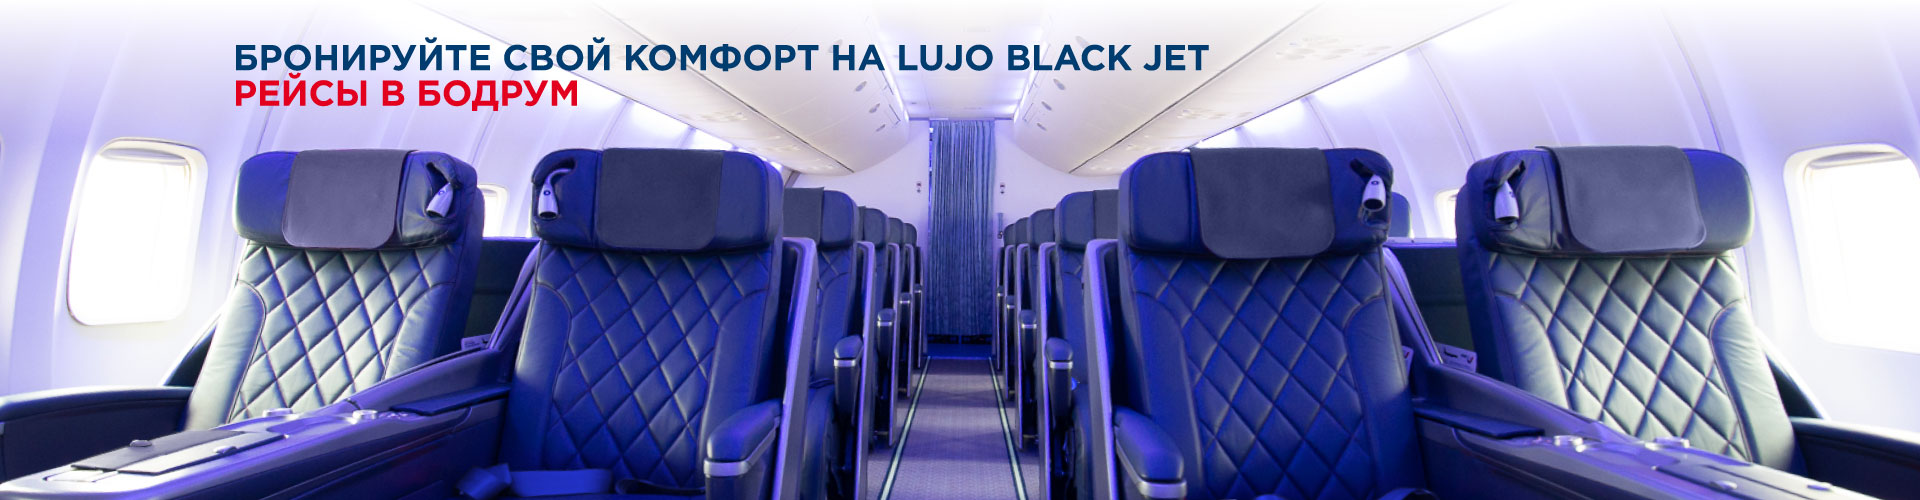 Azur Air, Black jet, Прямые рейсы в Анталию и Бодрум из Москвы на BLACK JET